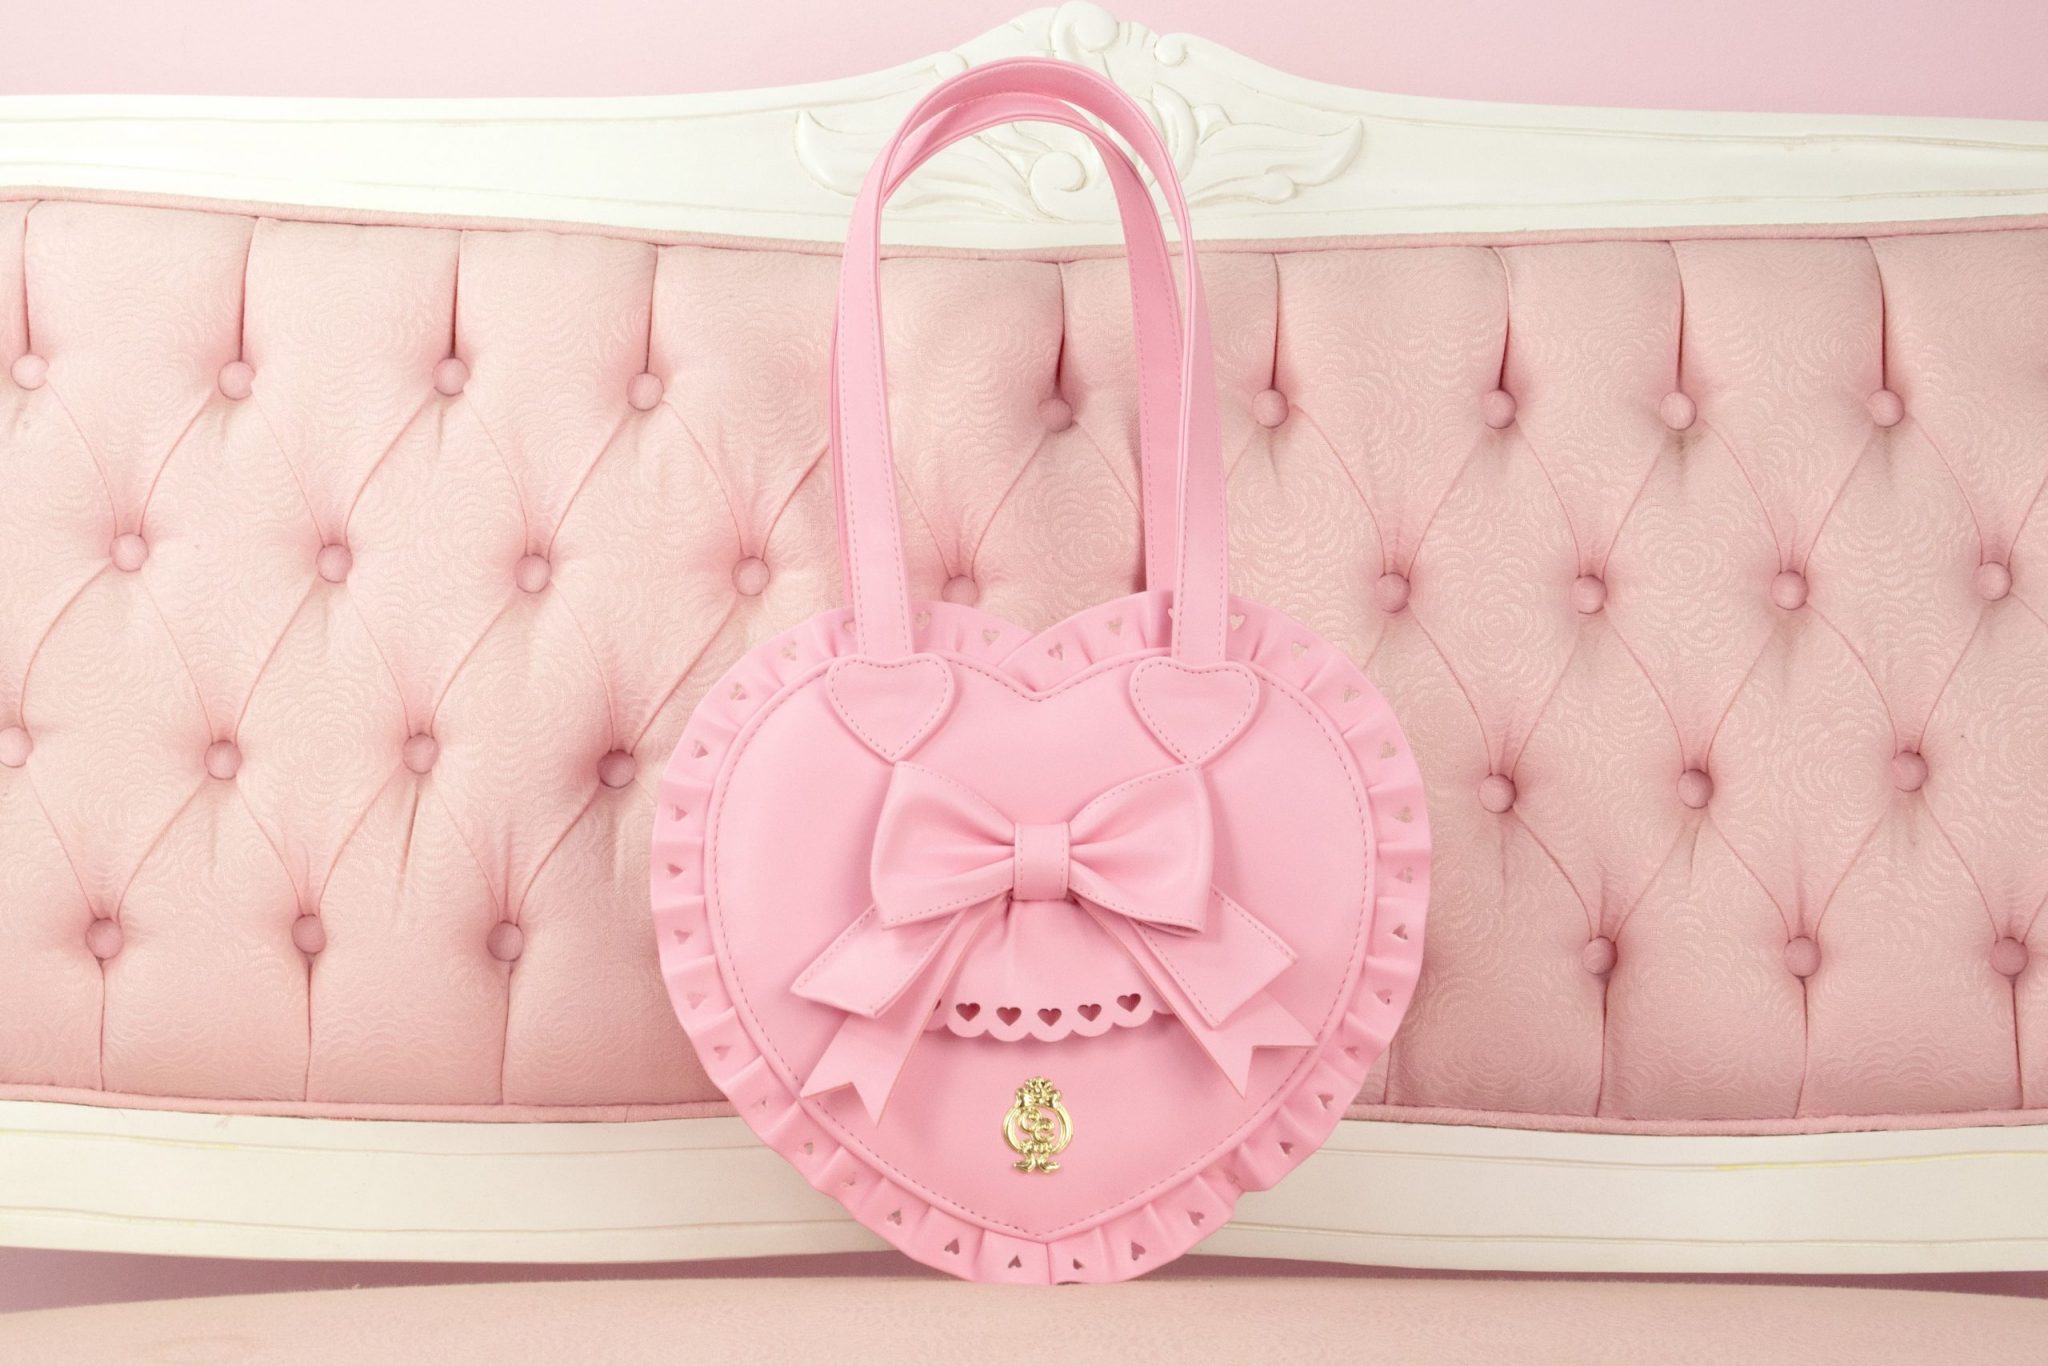 Heart Handbag - Pink